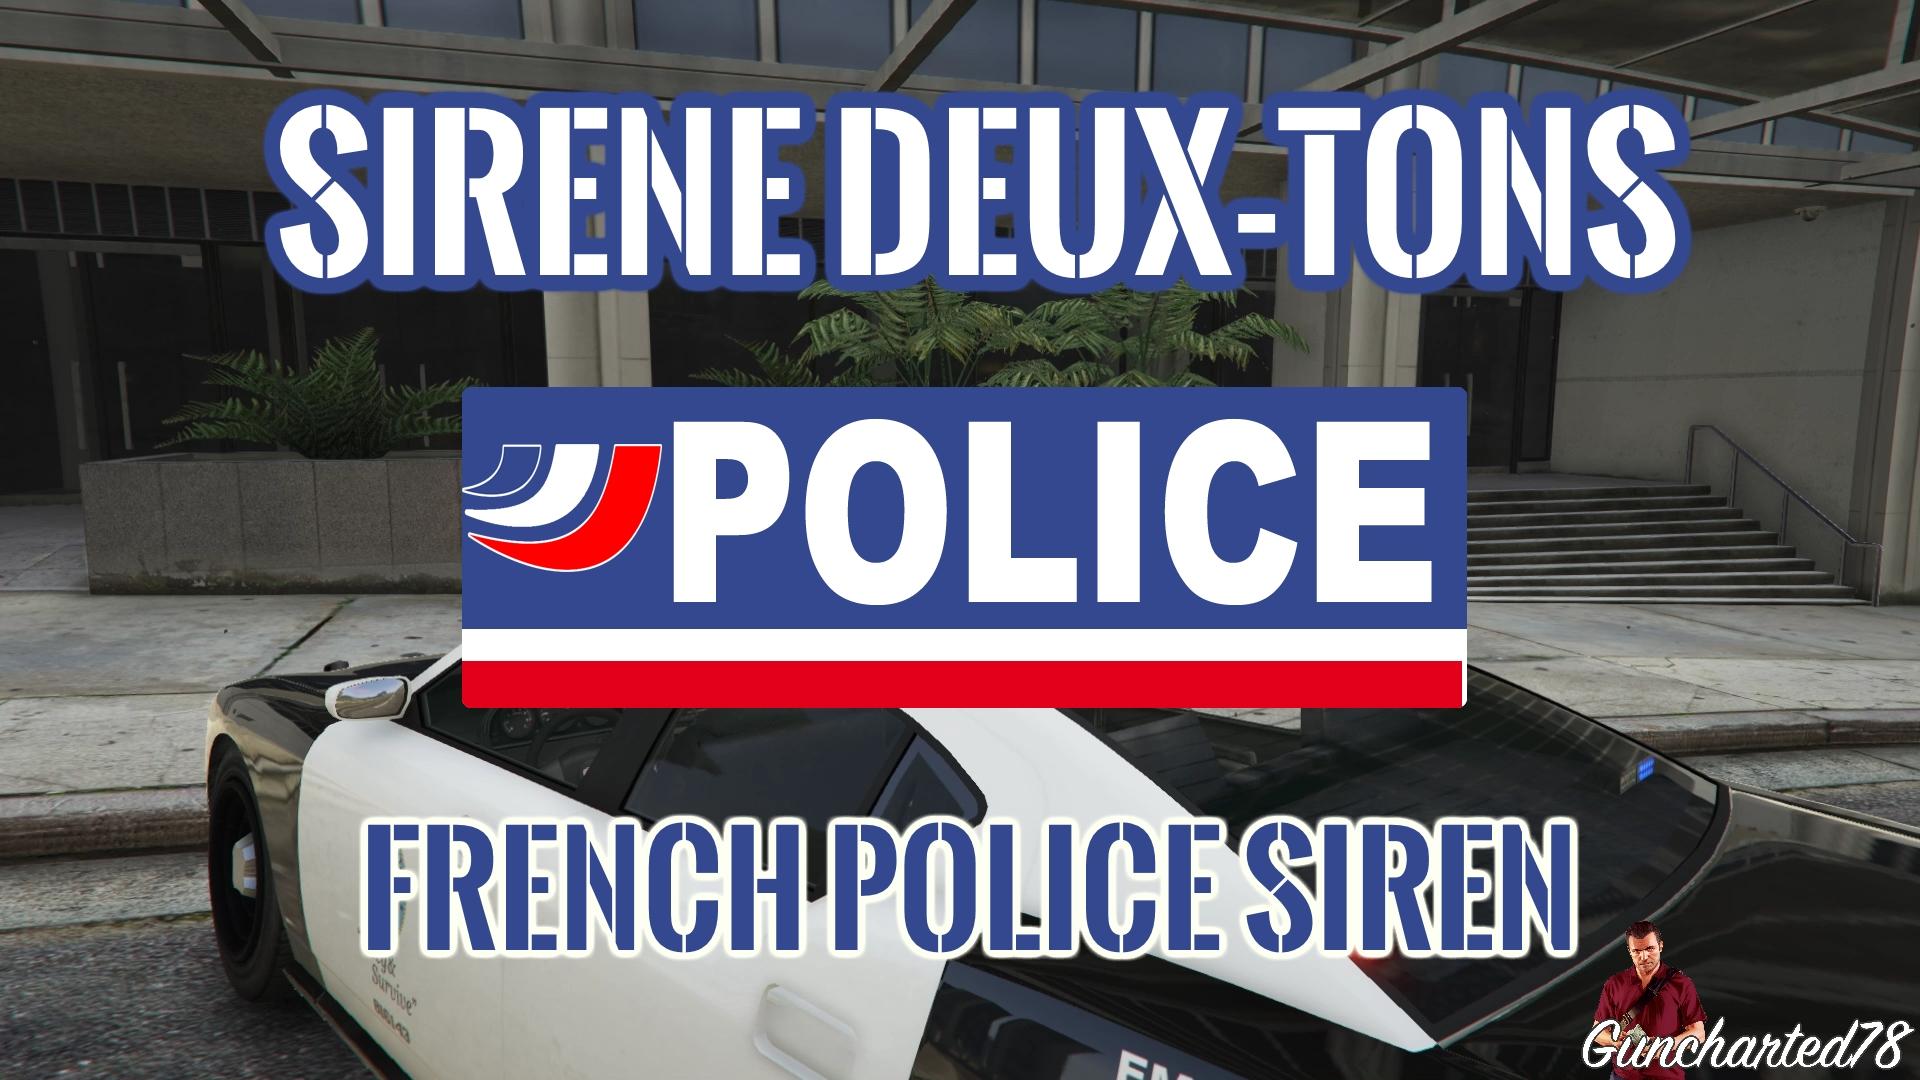 https://img.gta5-mods.com/q75/images/sirene-deux-tons-police-french-police-siren/ff83a4-police%20deux%20tons%20mods.jpg